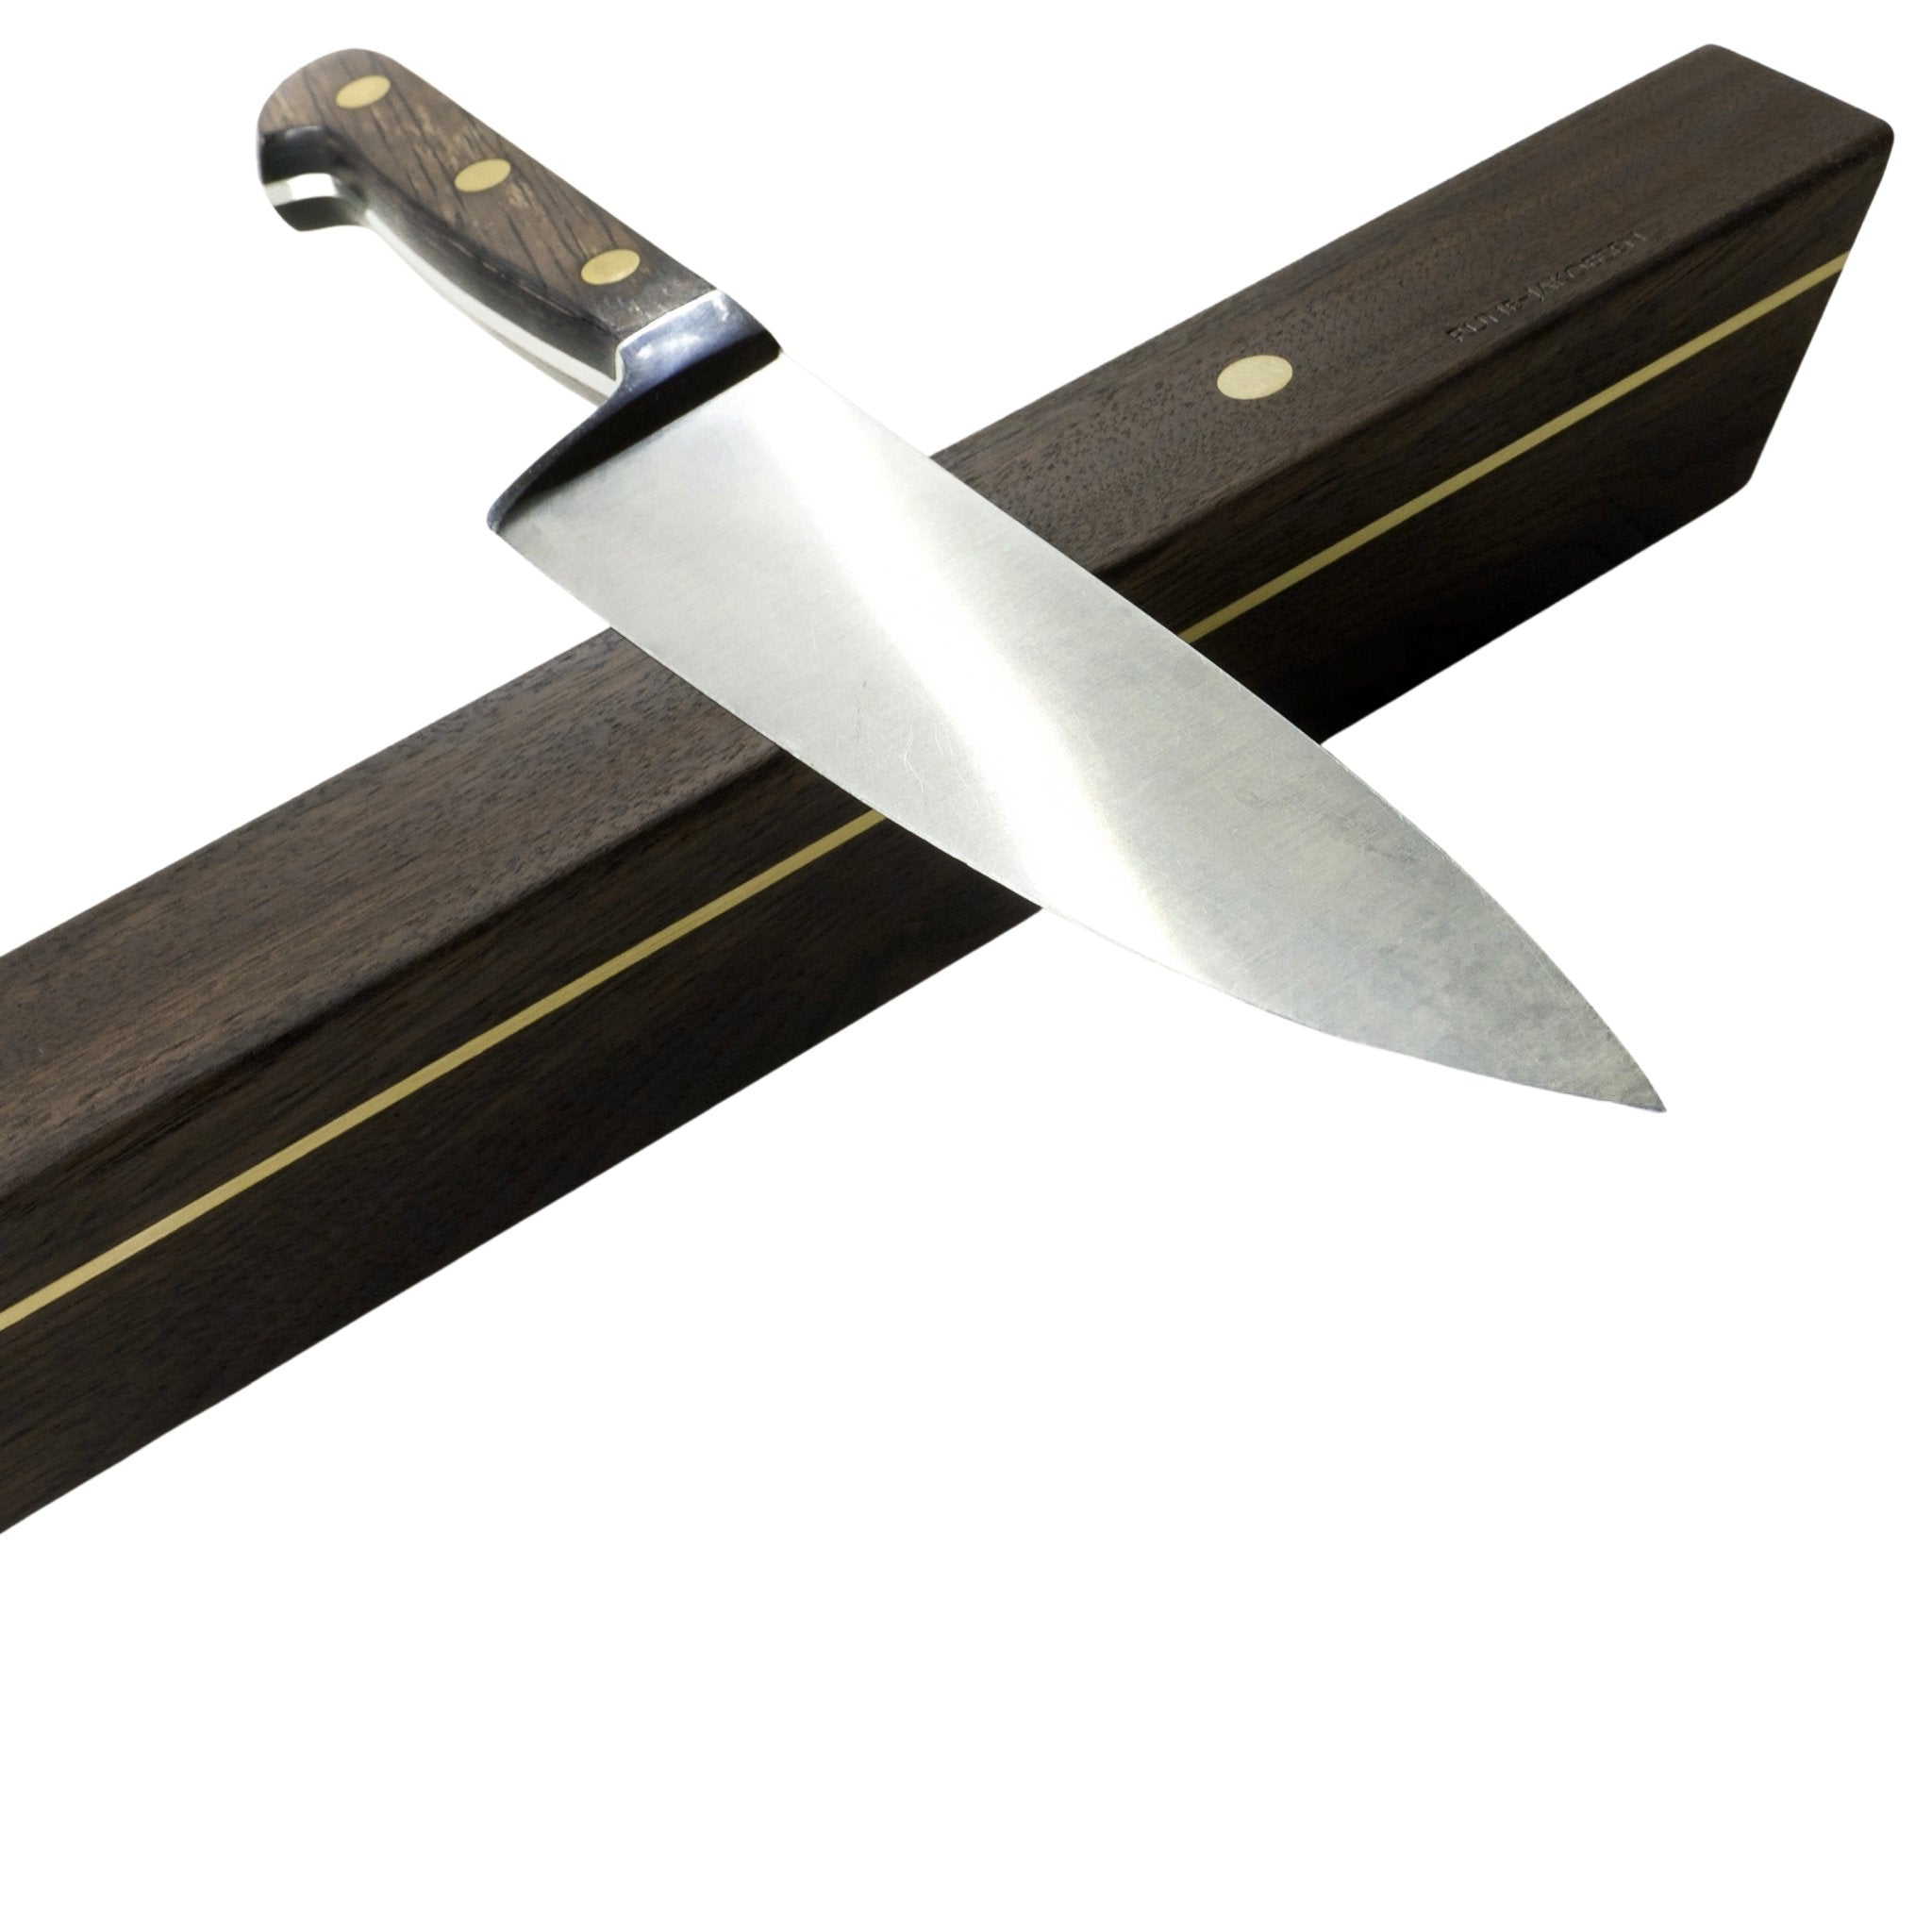 Rune-Jakobsen Woodworks 'Knifeboard Classic' dyb knivmagnet_3 by Rune-Jakobsen Design